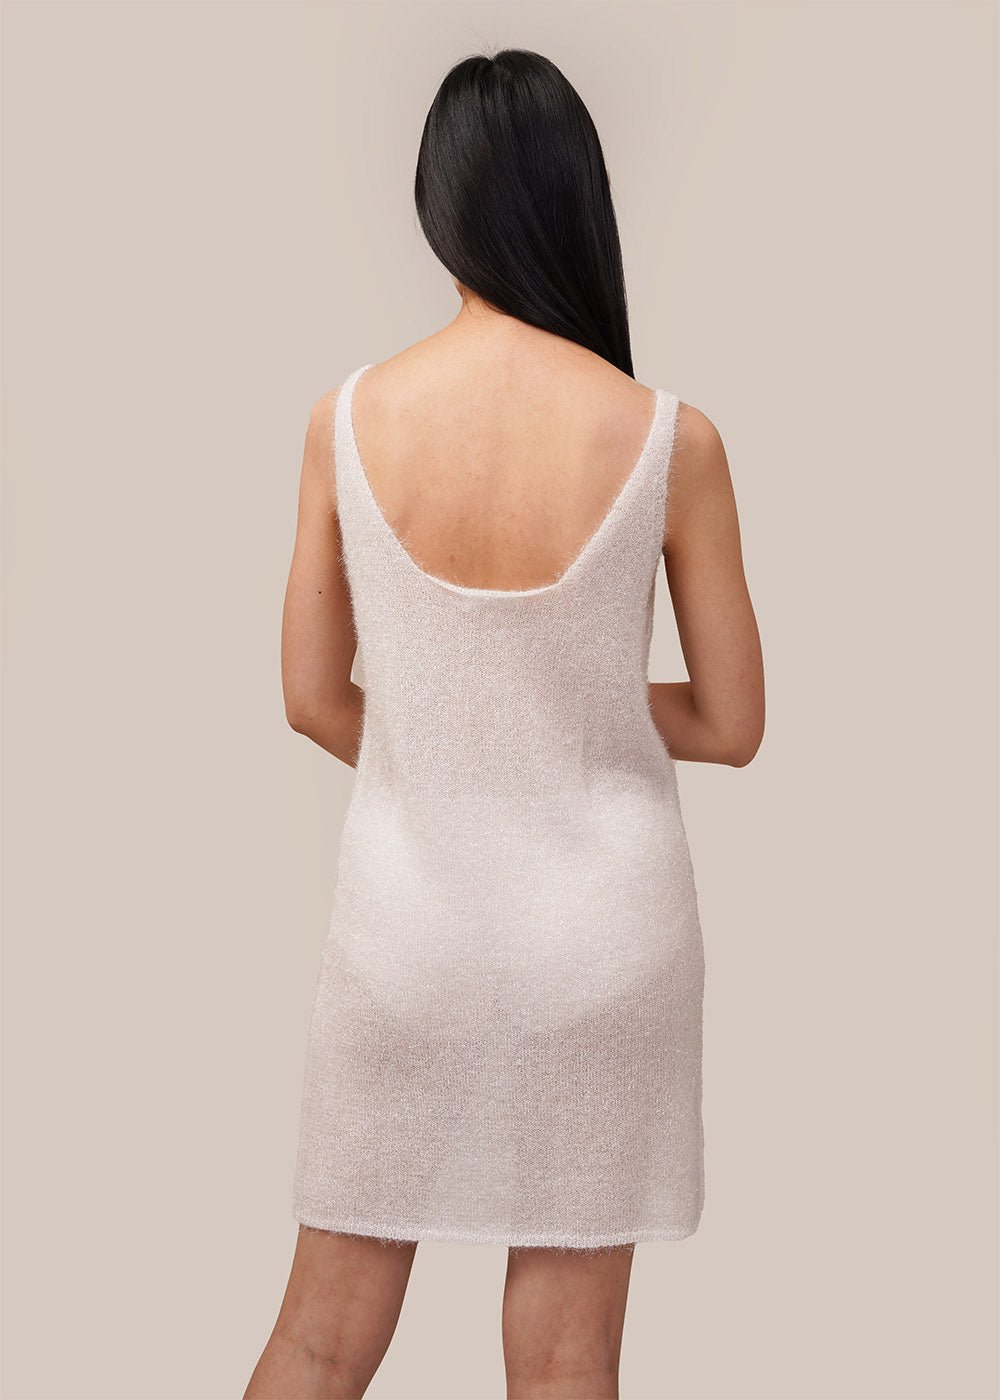 AMOMENTO White Hairy Layered Dress - New Classics Studios Sustainable Ethical Fashion Canada